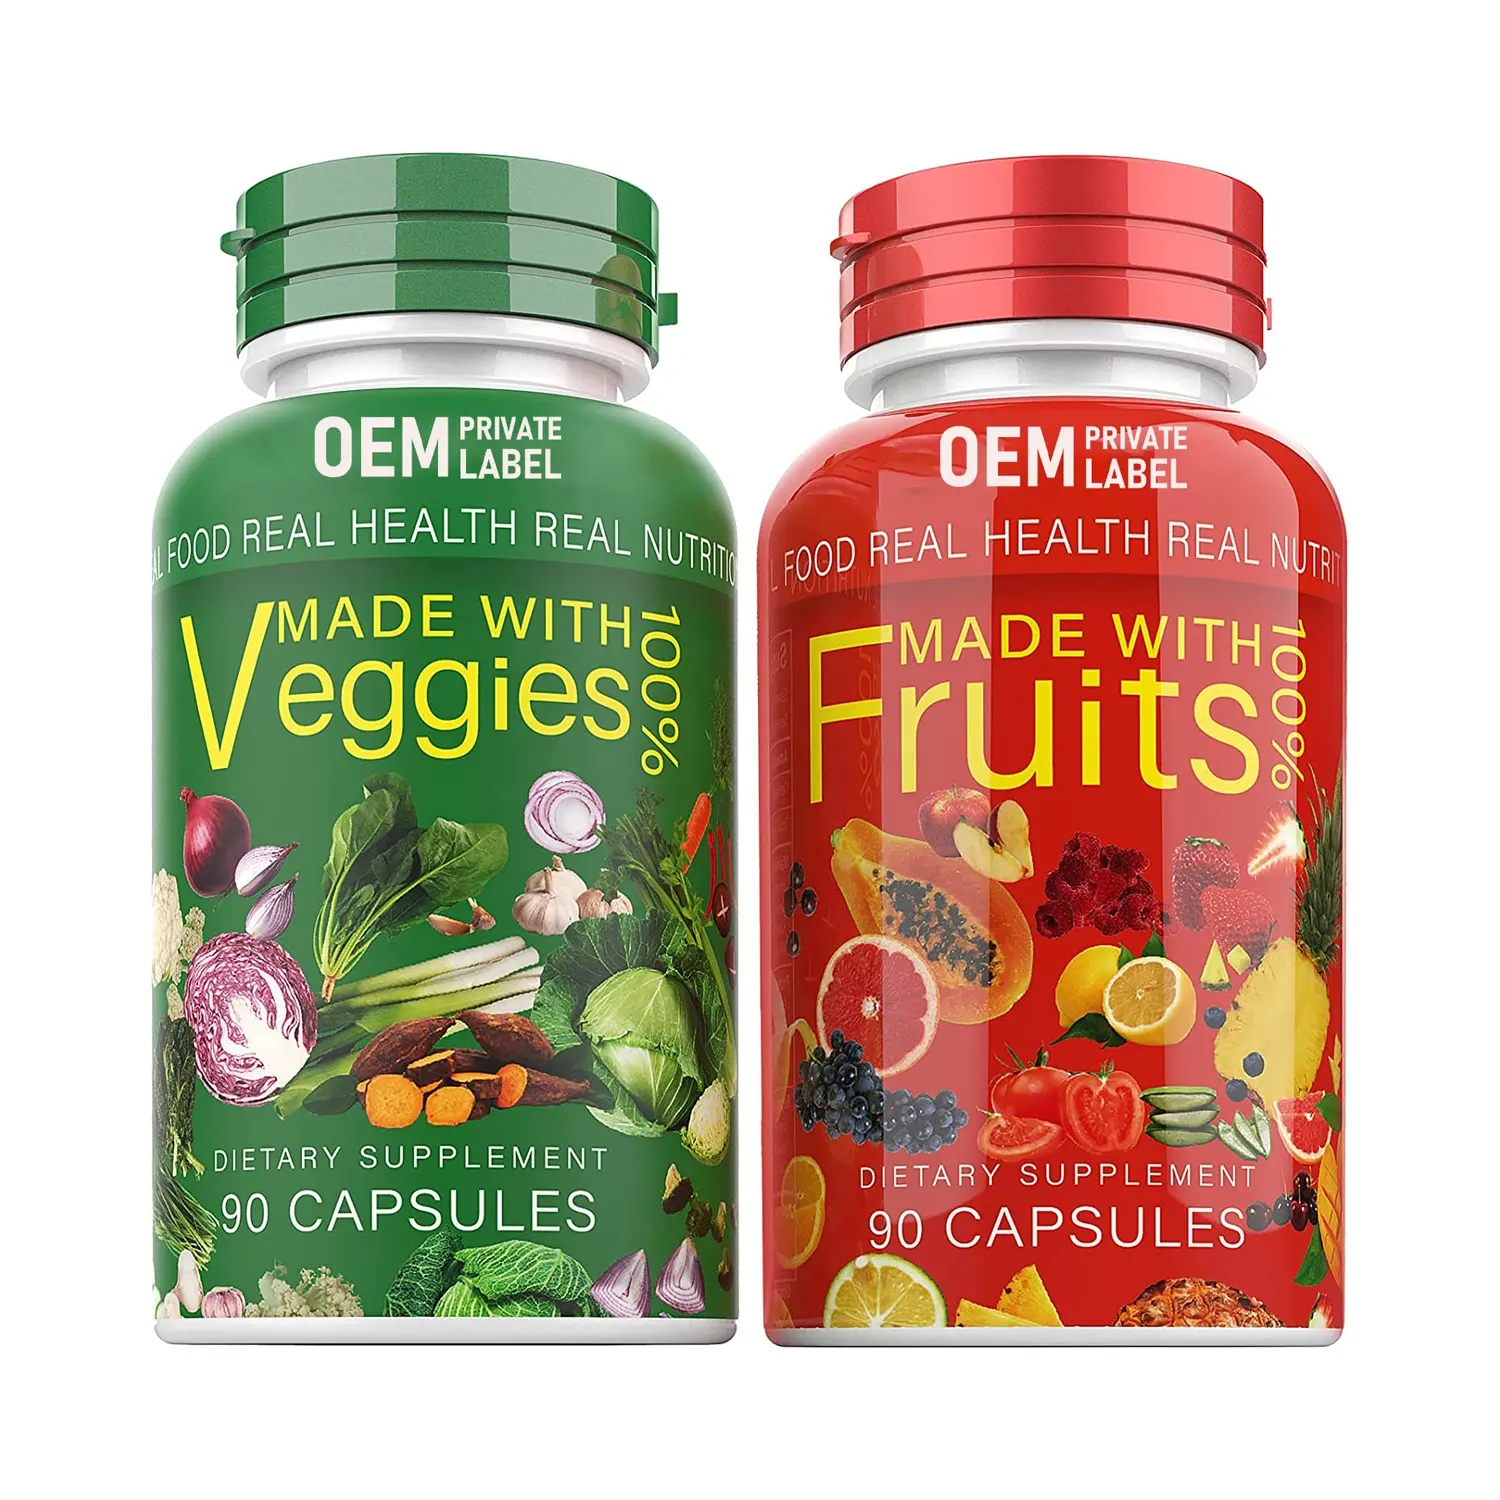 OEM Manufacturer Health Food Supplement Vegan Fruit and Veggies Capsules Natural Dietary Fiber Fruits and Veggies Supplement